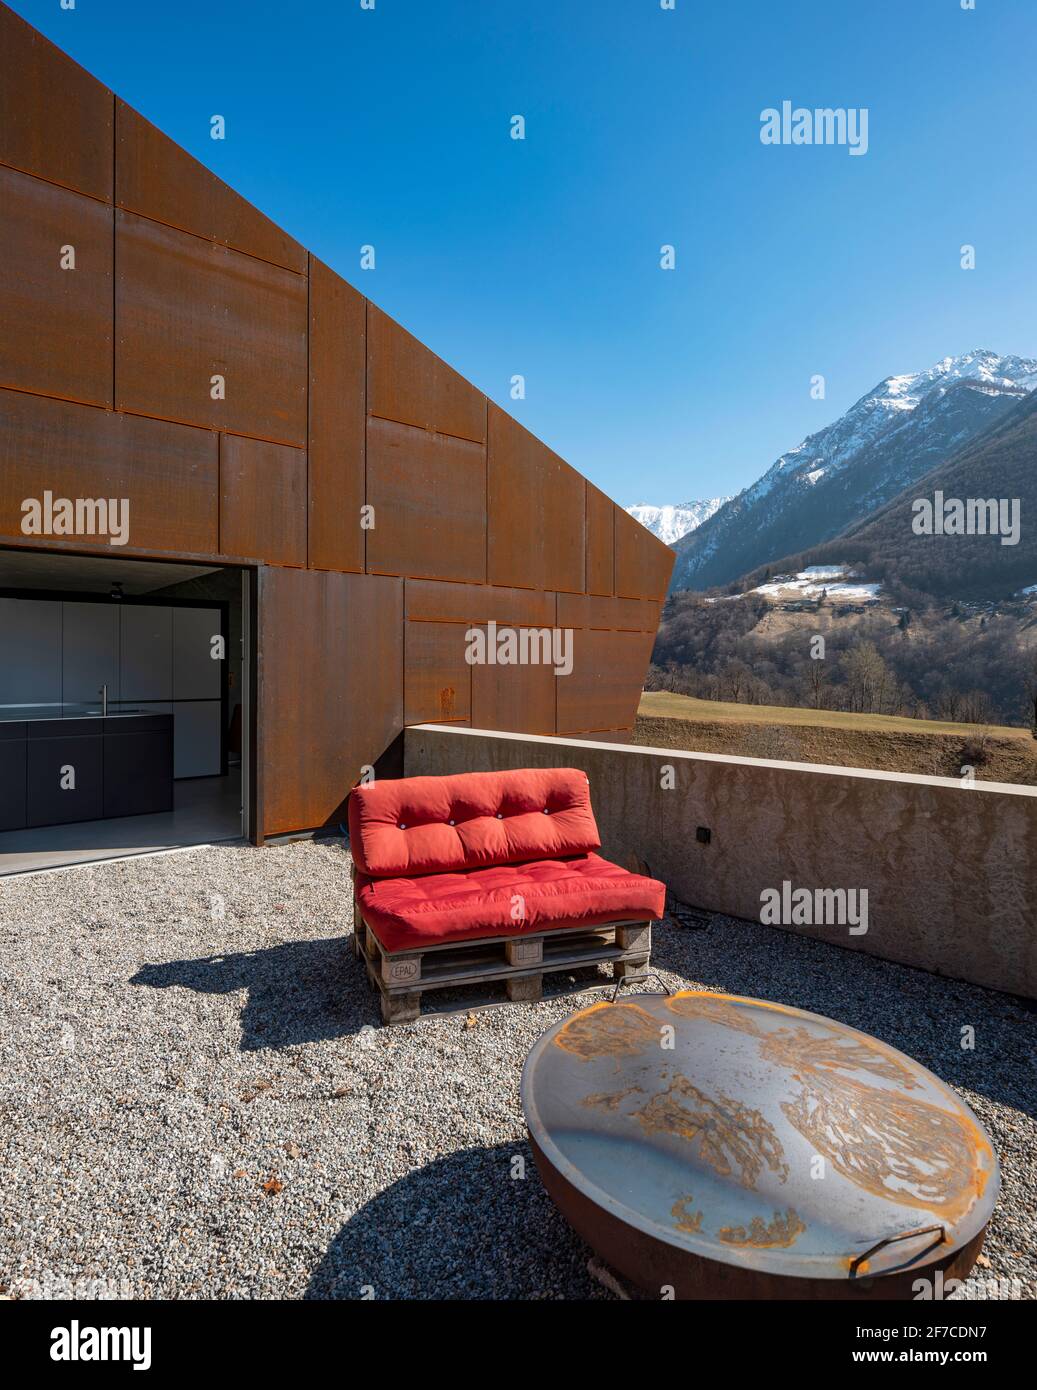 Modernes Haus mit Veranda. Rotes Sofa mit Blick auf die Berge der Schweiz.  Konzept, niemand drinnen Stockfotografie - Alamy